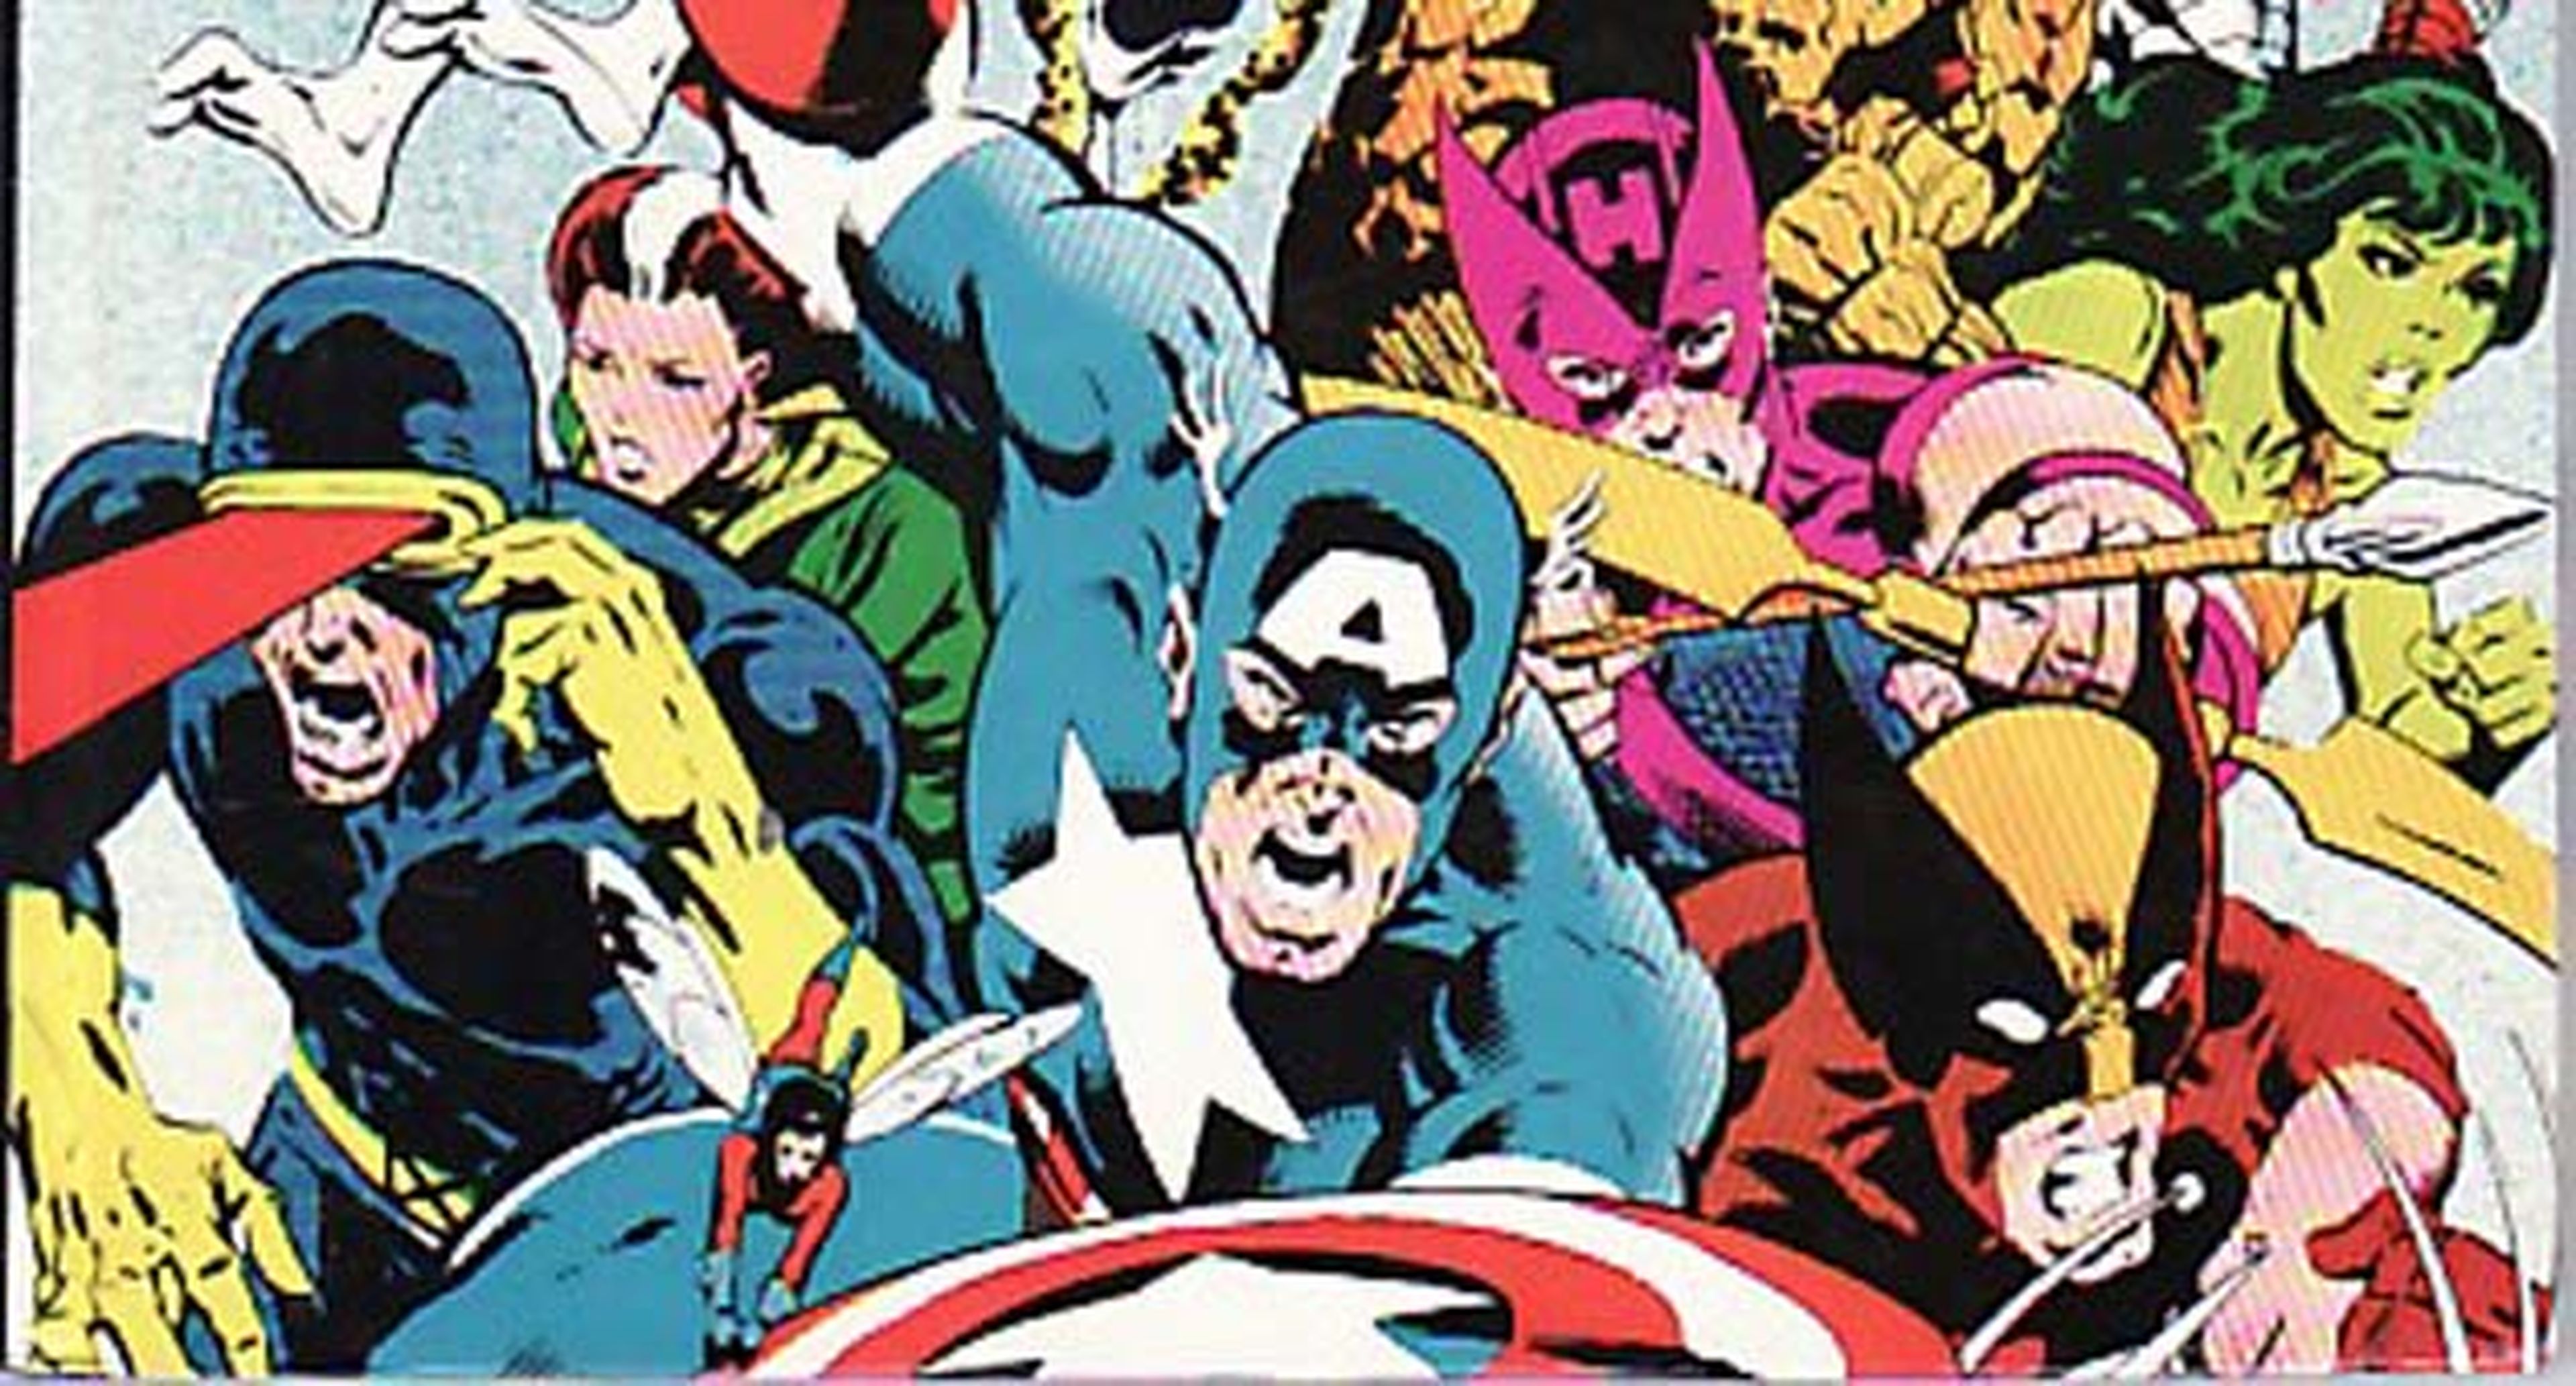 Marvel: Las 10 mejores sagas